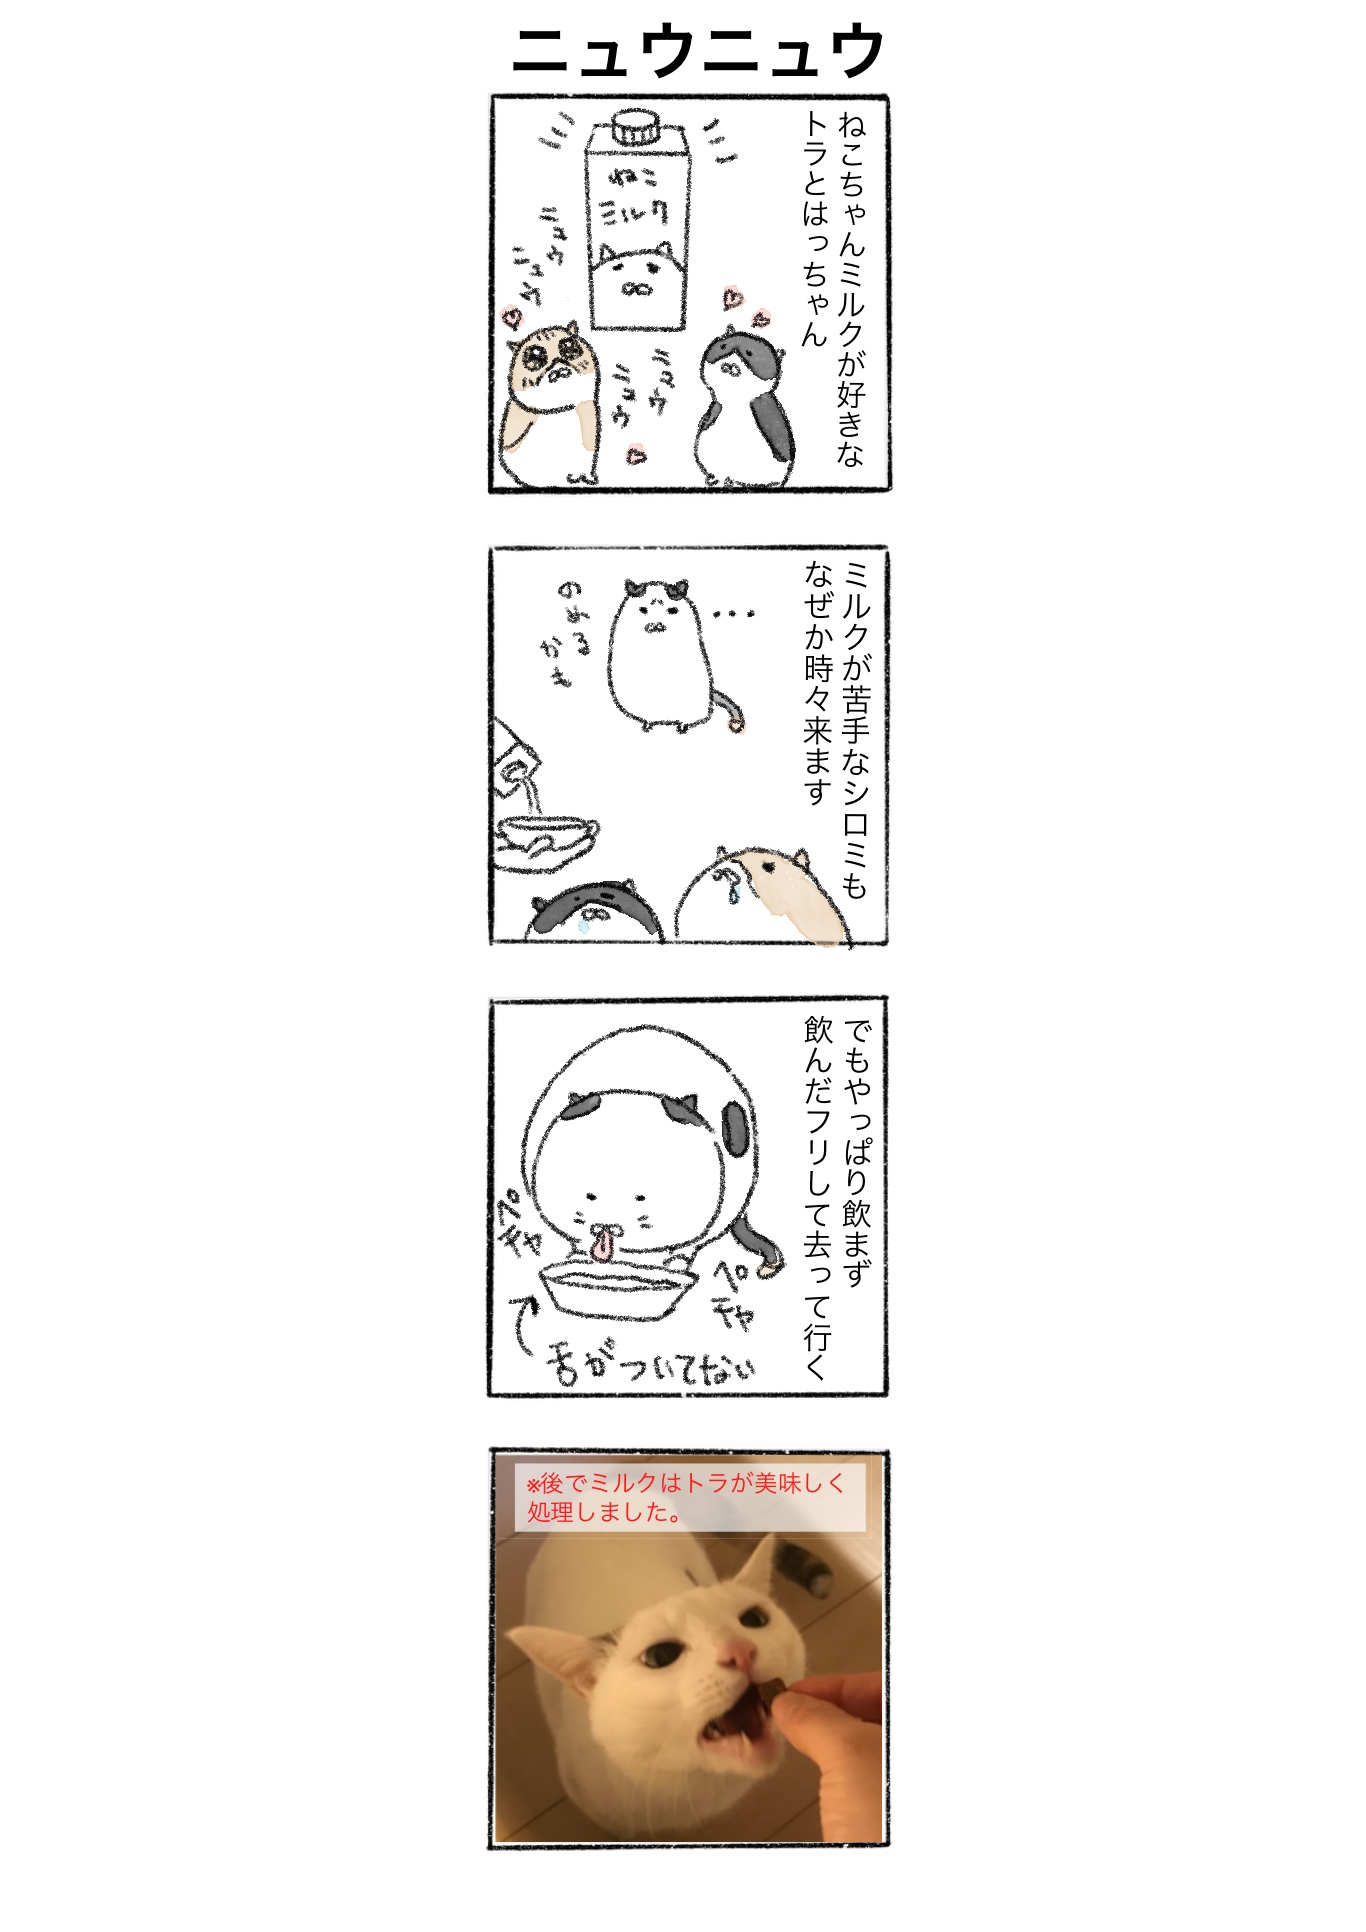 【ゆる猫4コマ#004】ニュウニュウ